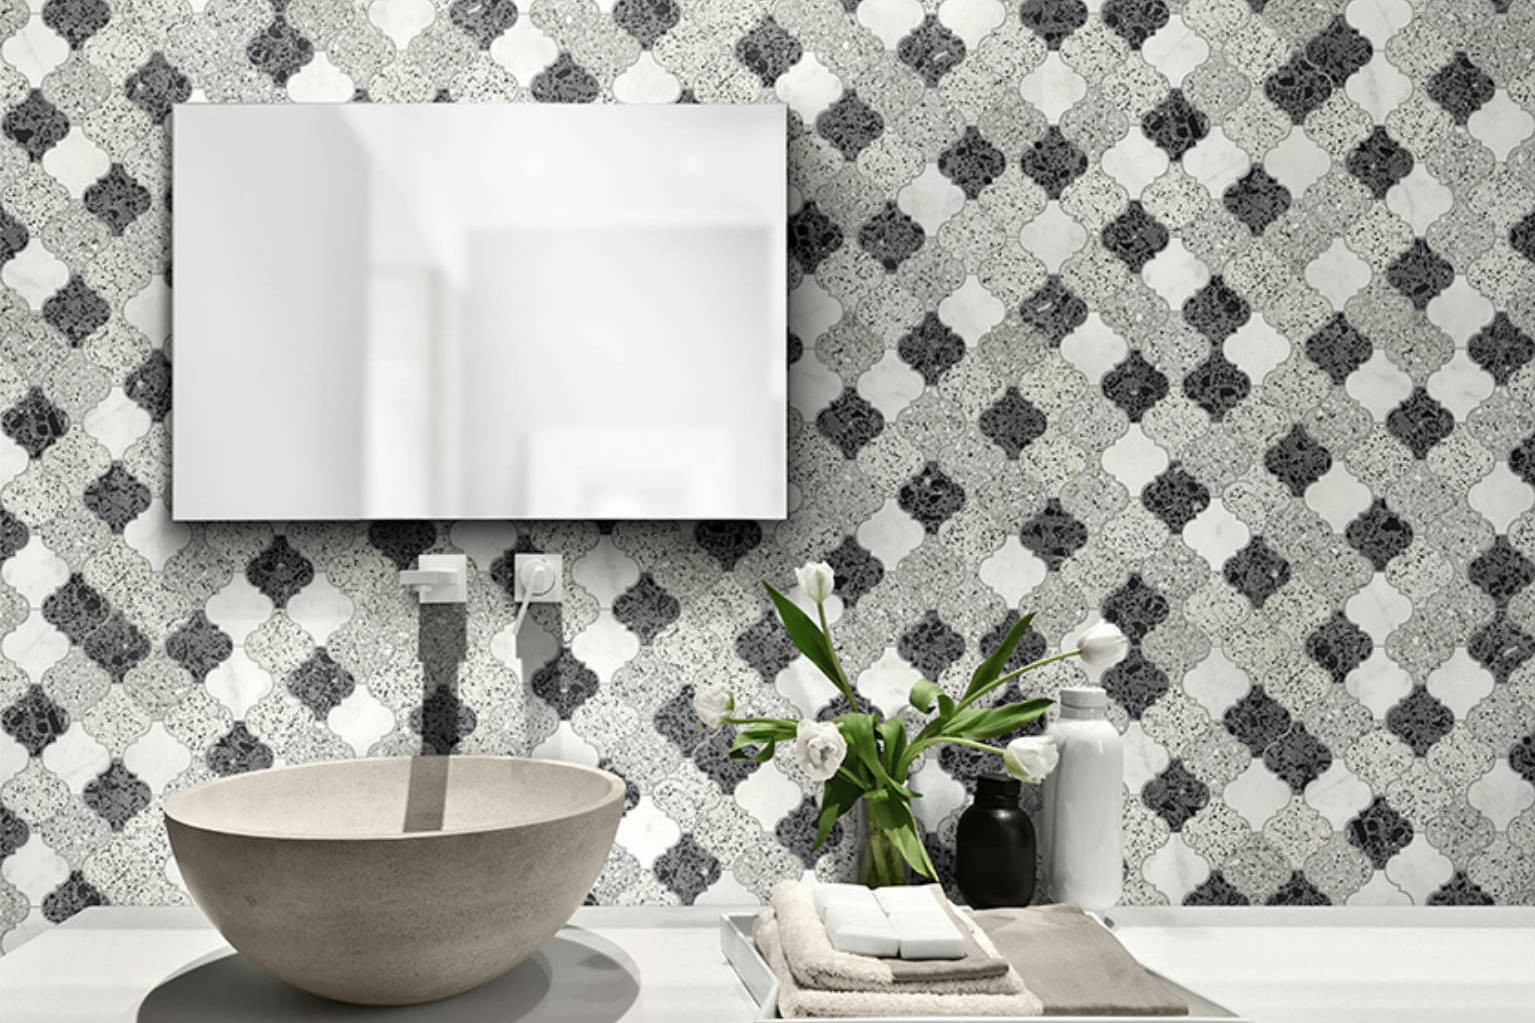 Lantern Terrazzo Marble White, Grey, Black Mix Mosaic | Garcia Imported Tile